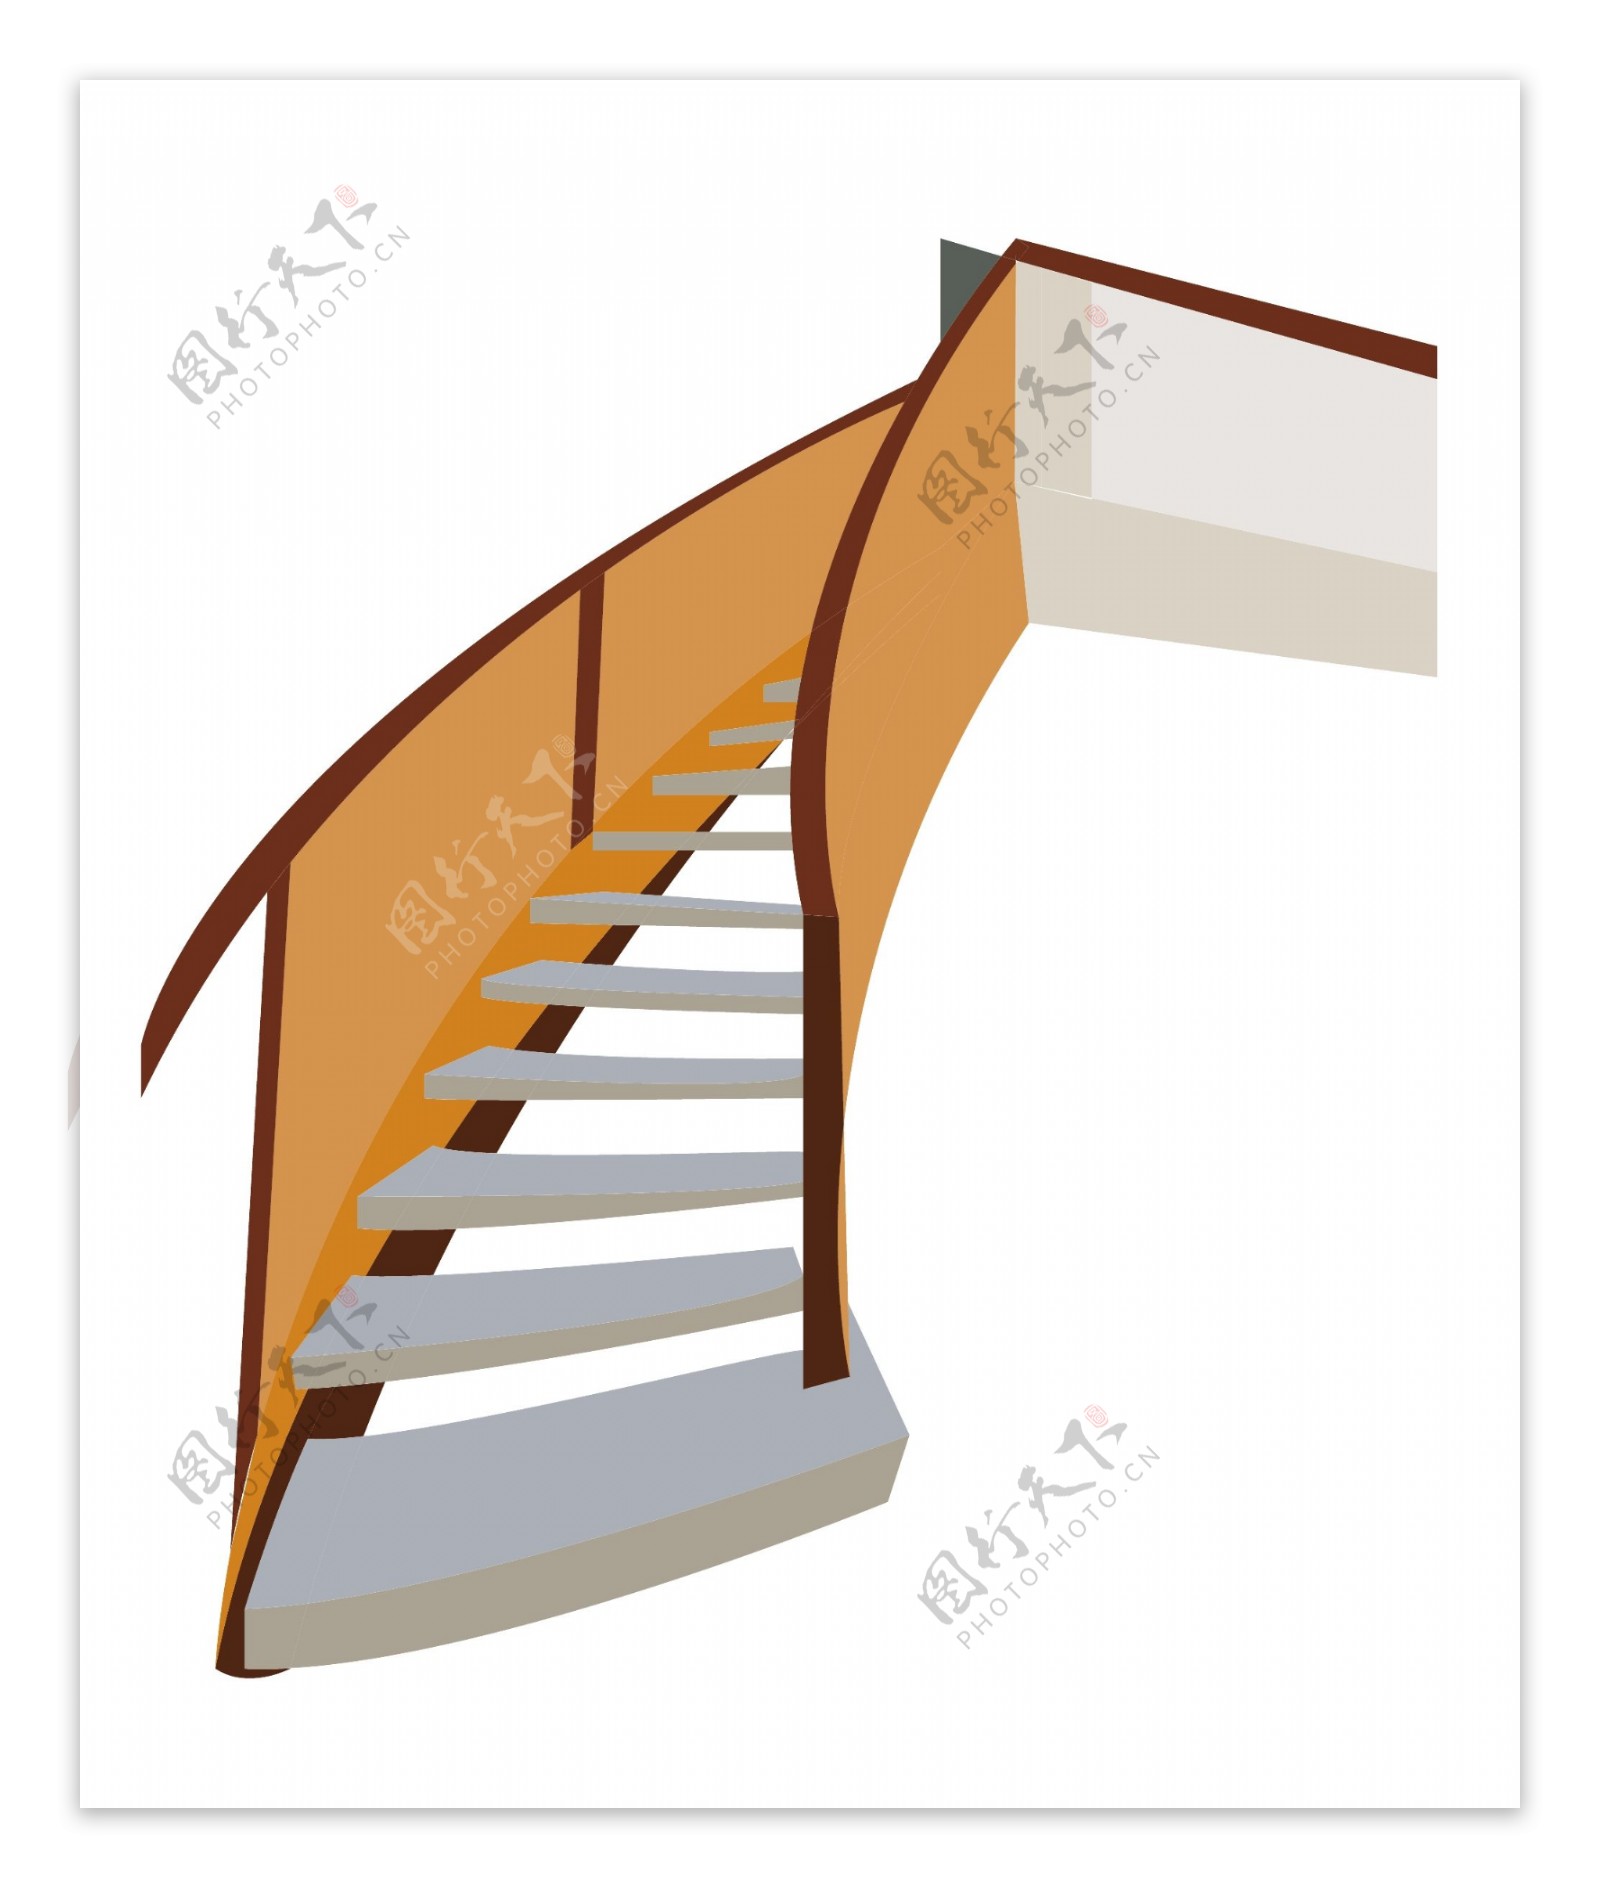 立体楼房楼梯插图